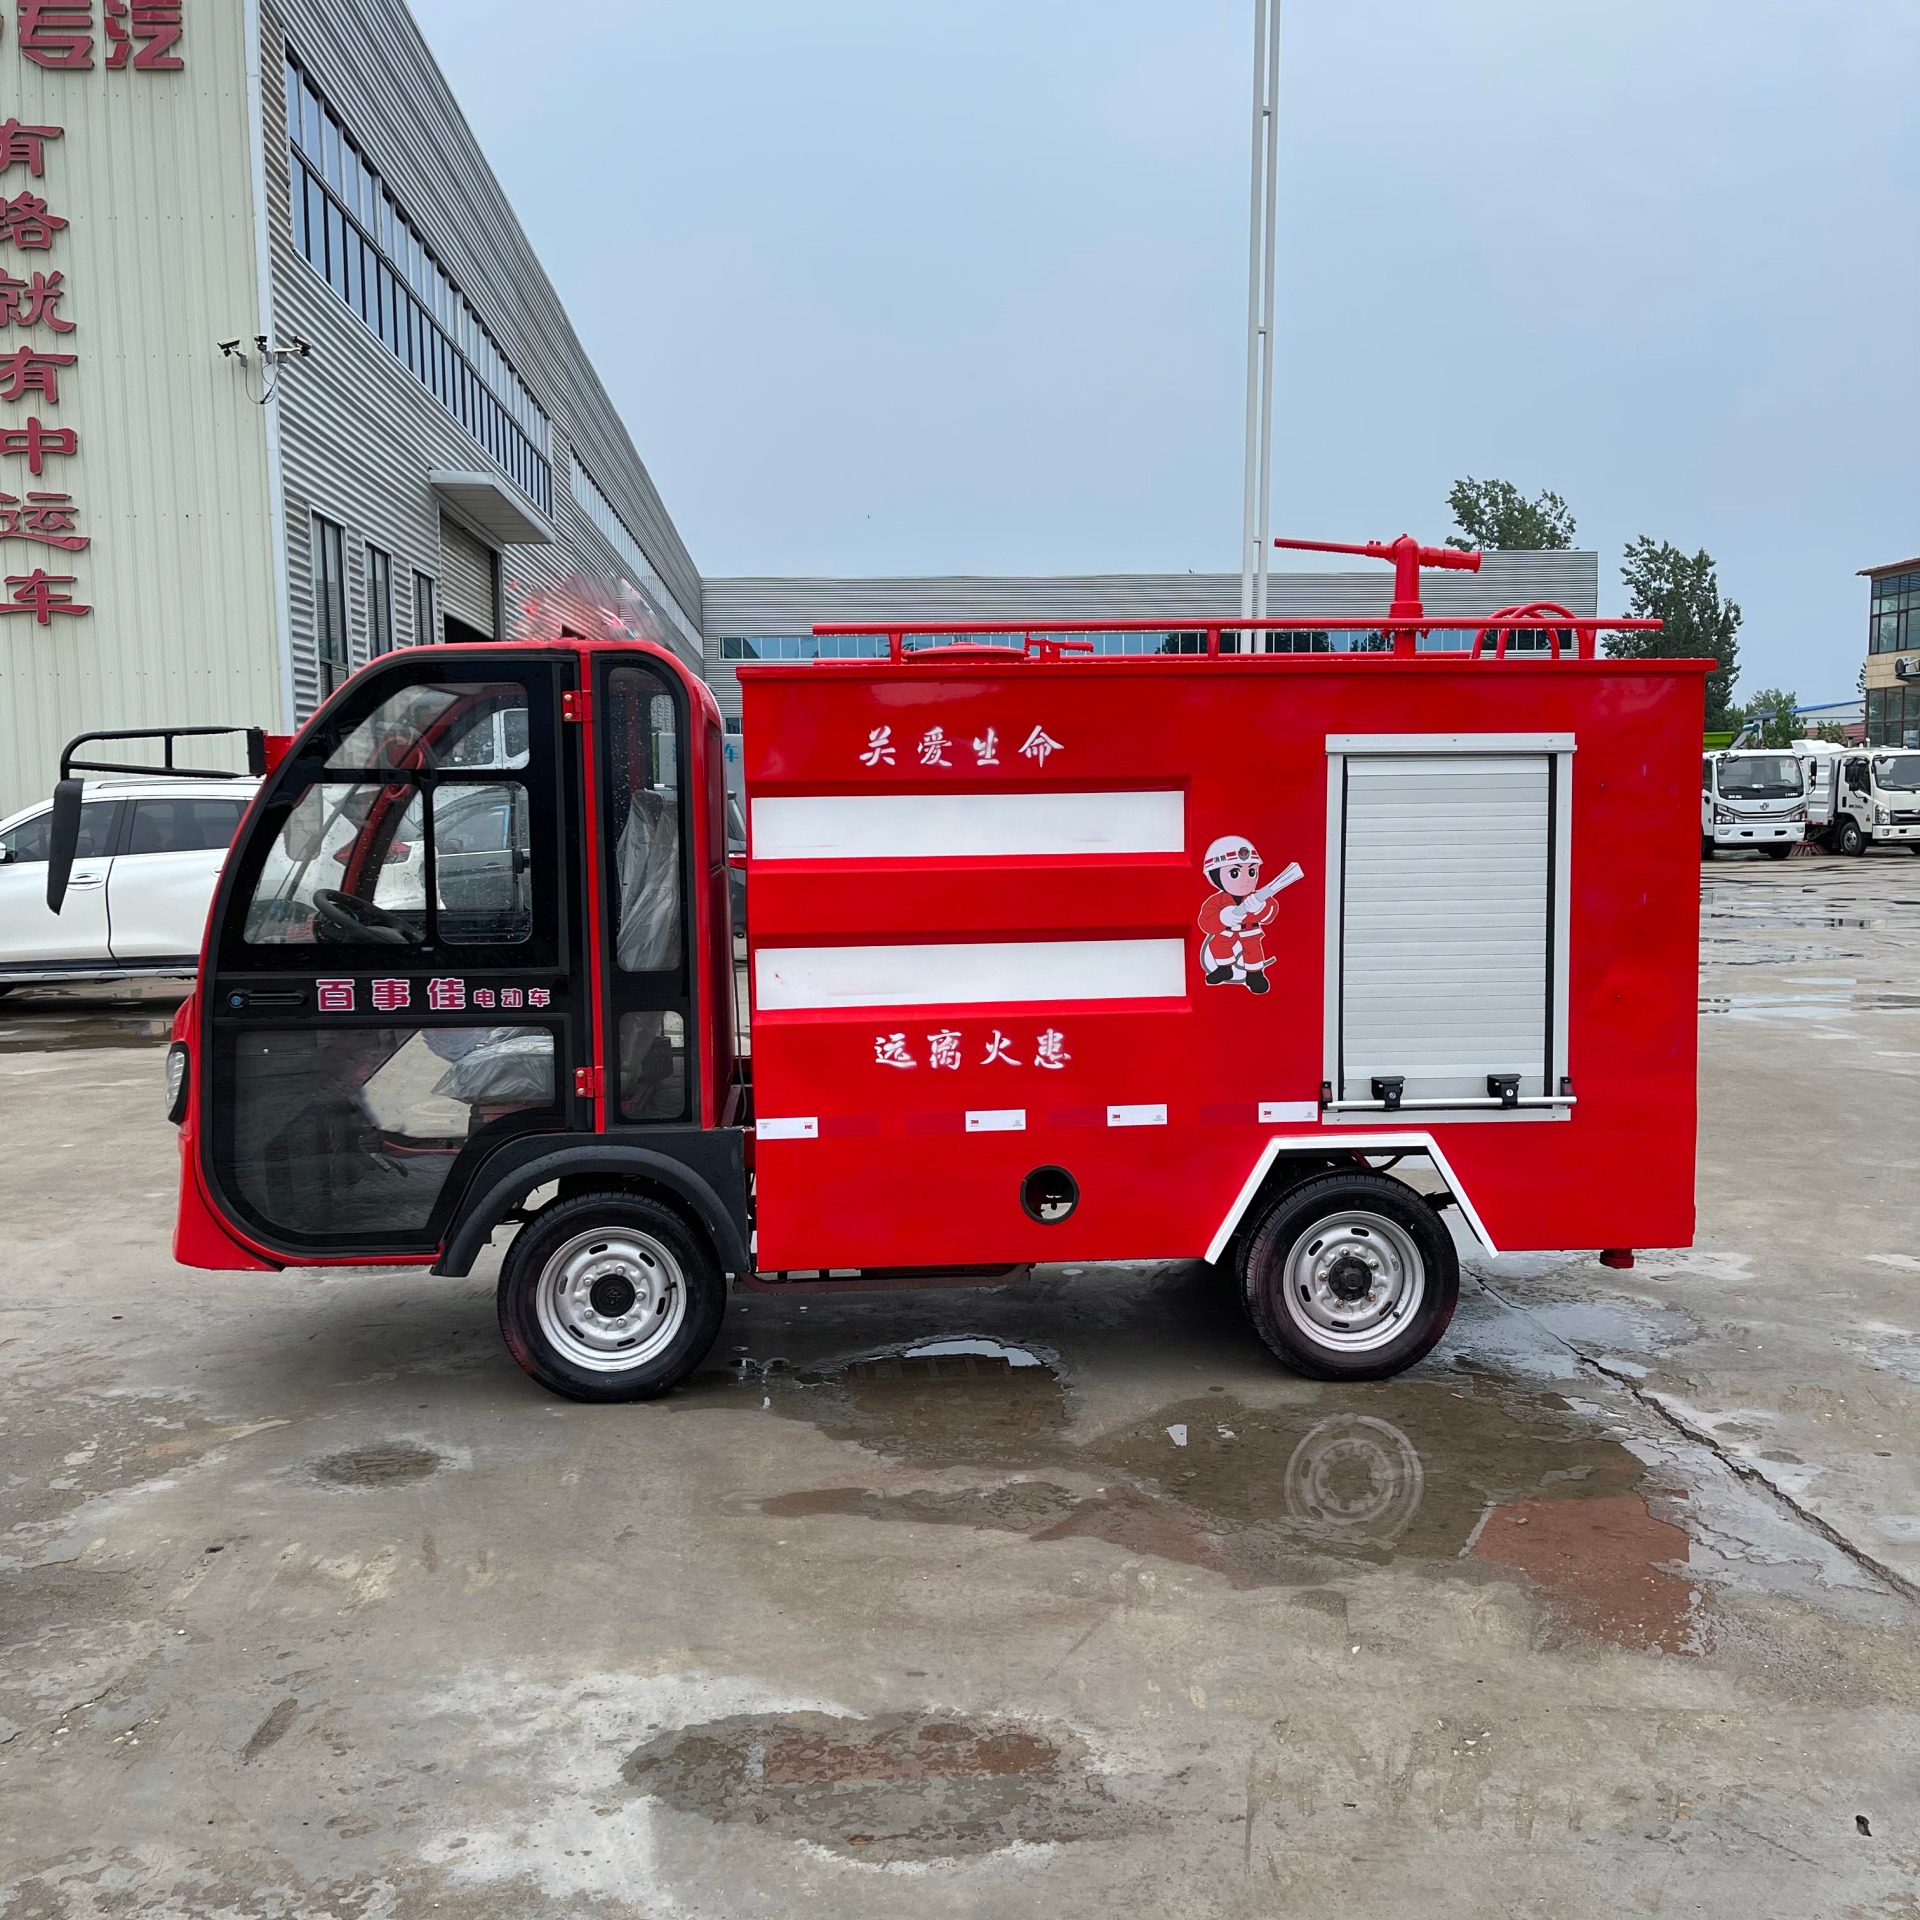 小型水罐消防车 厂区物业消防巡逻车 爬坡能力强 规格多 永固威